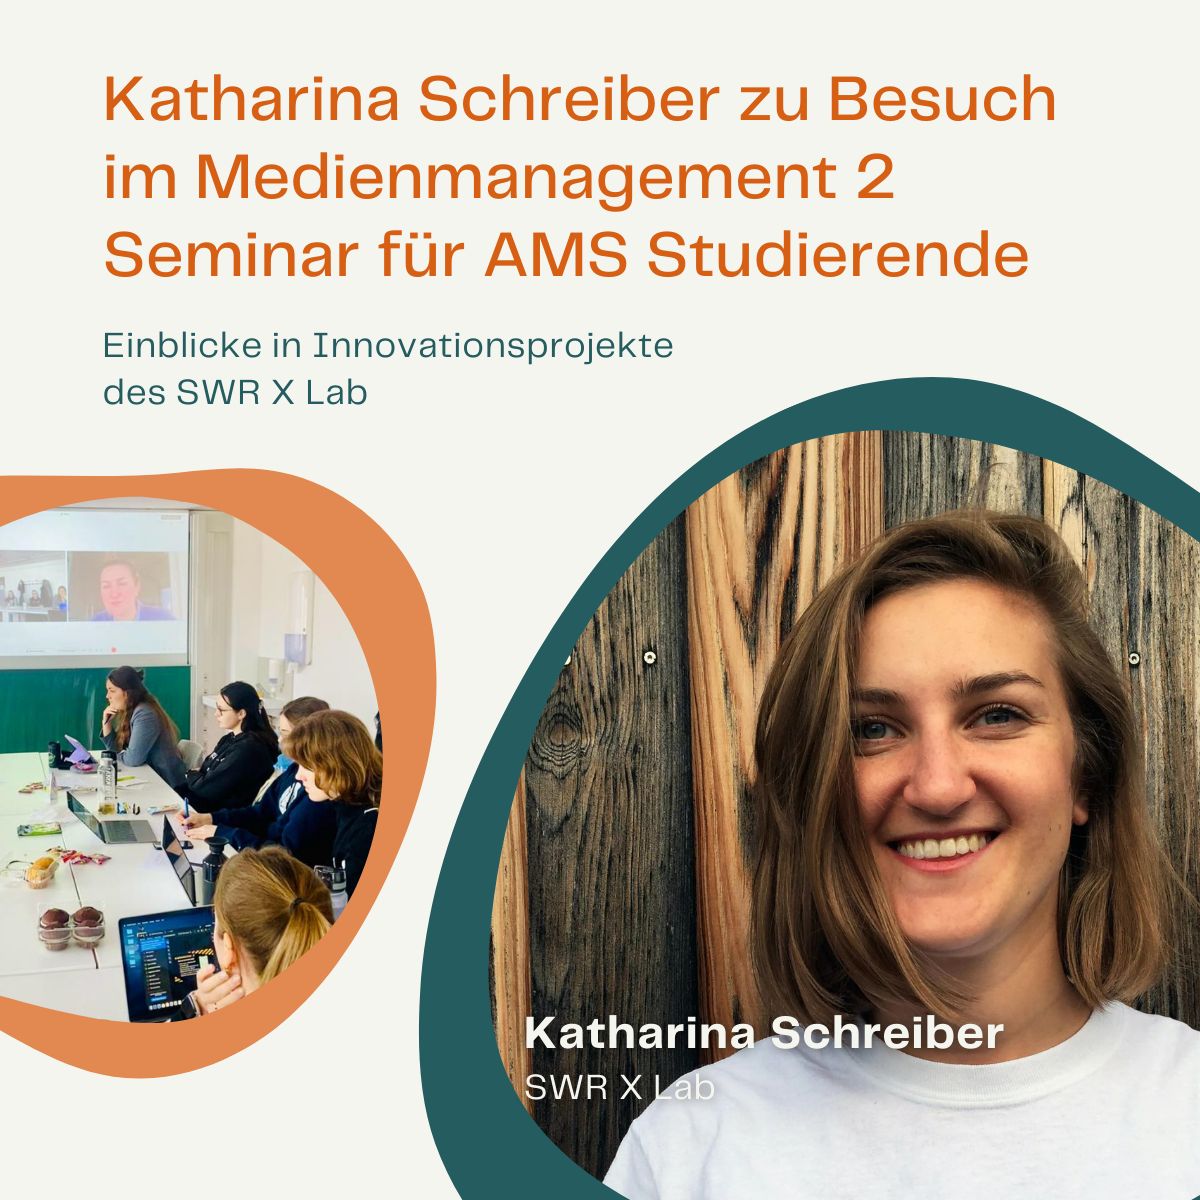 Katharina Schreiber vom SWR X Lab zu Besuch im Seminar Medienmanagement 2